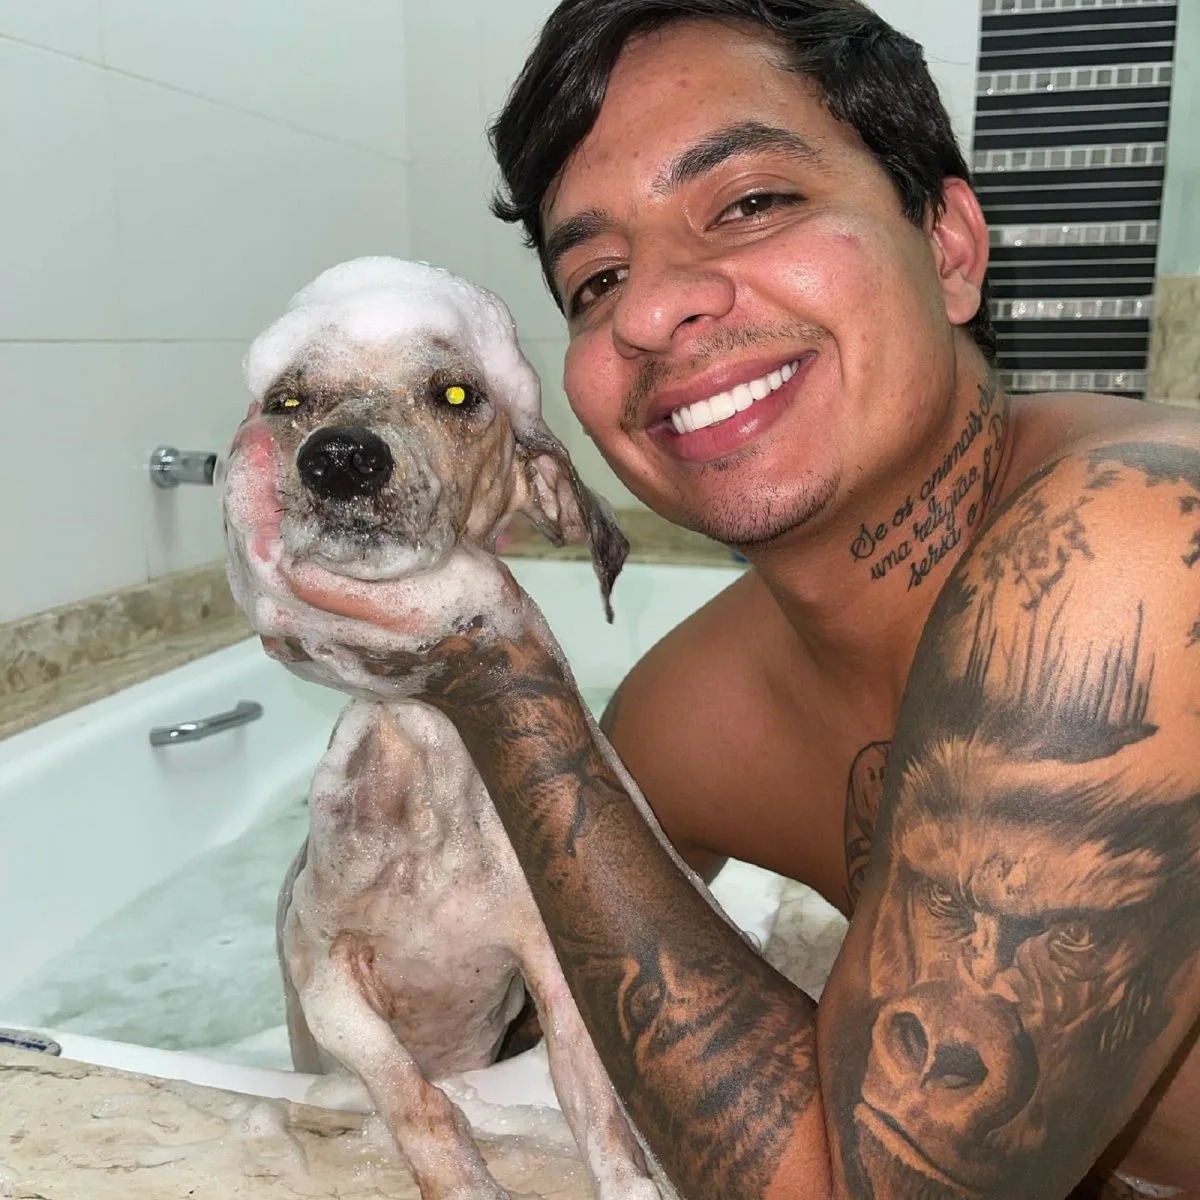 Mann gibt Hund sein erstes Bad